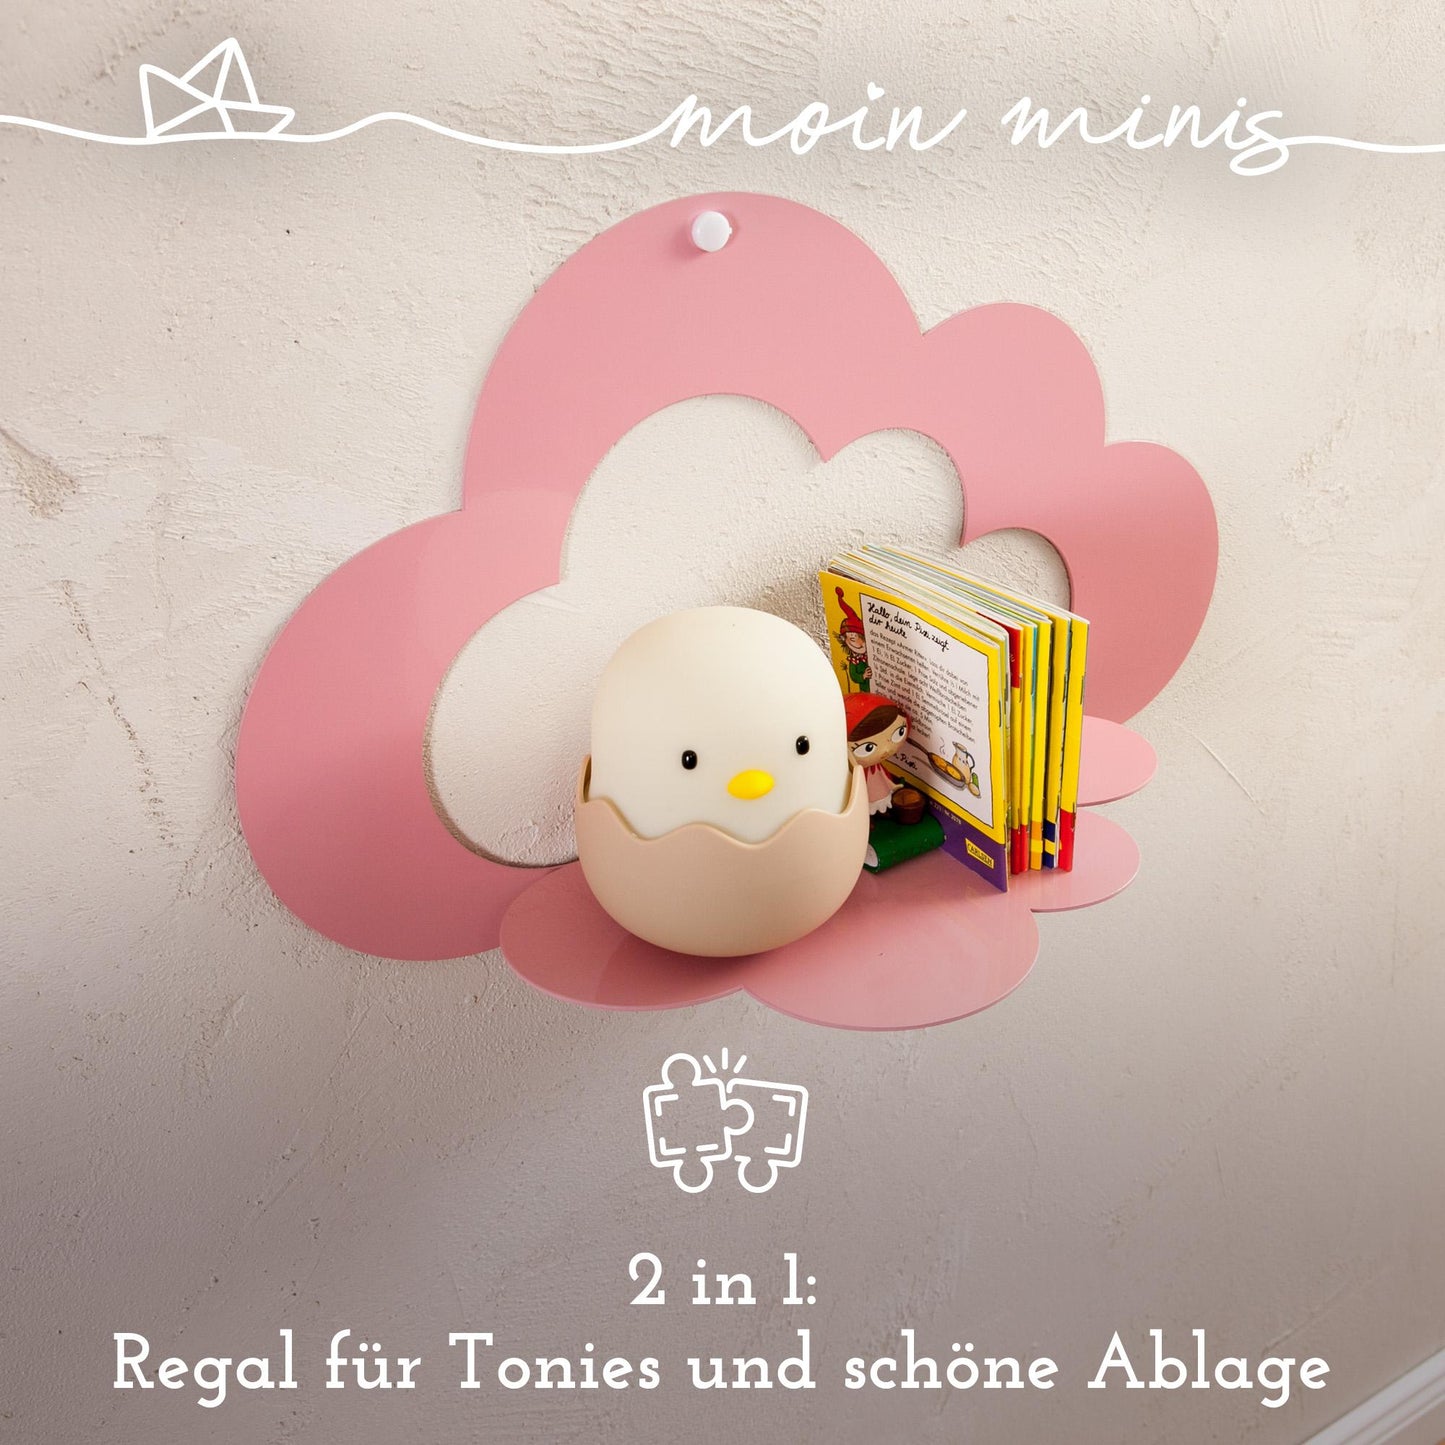 moin minis Wolke Rosa magnetisches Regal kompatibel mit 25 Tonie Figuren und Tonie Box Wolkenregal für Kinder Hörfiguren Magnetregal